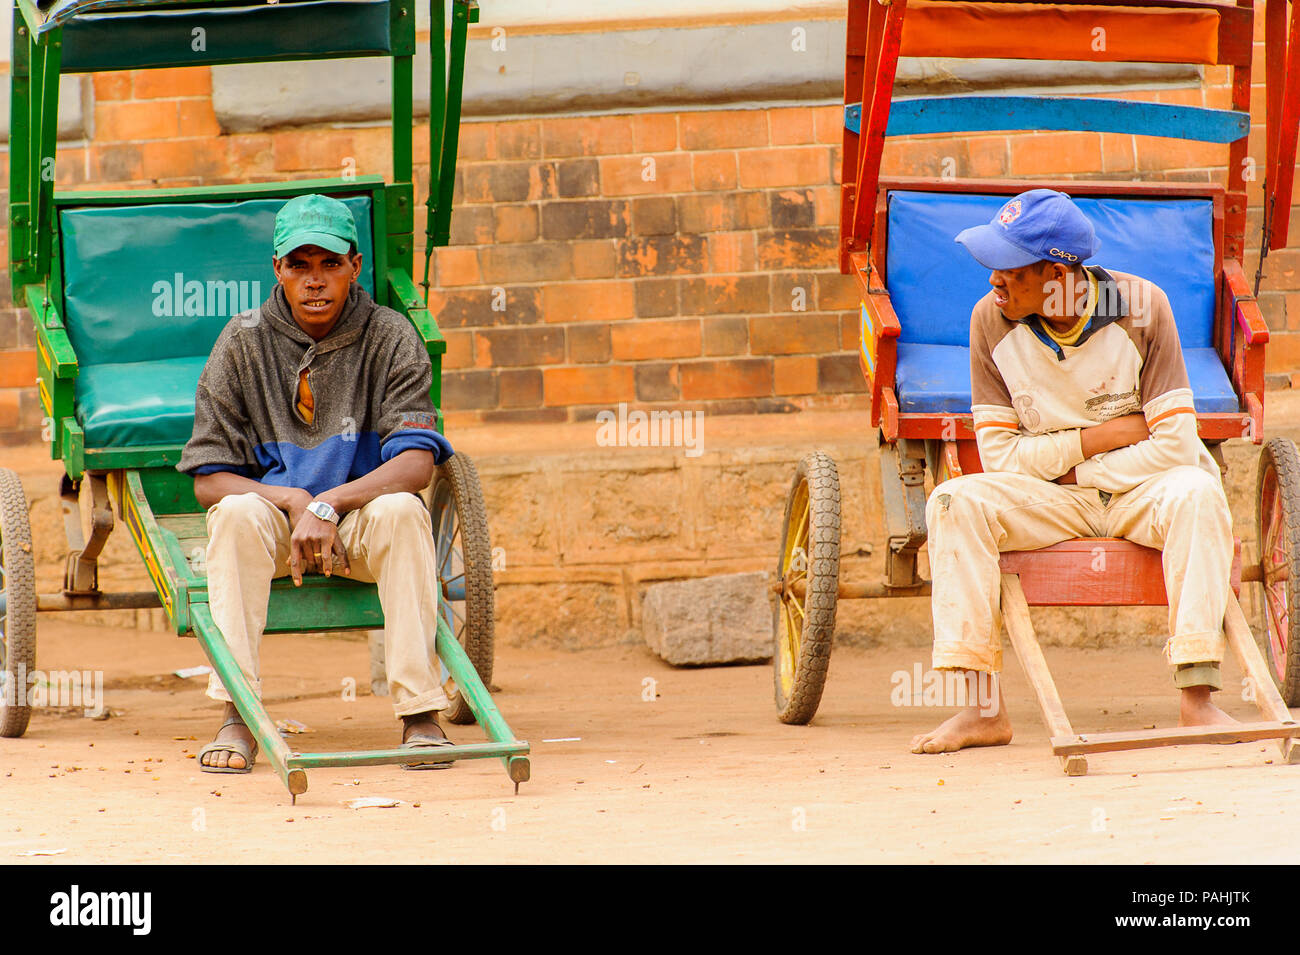 ANTANANARIVO, Madagaskar - 29. JUNI 2011: Unbekannter Madagaskar Jungen auf einem Schlitten sitzen. Menschen in Madagaskar Leiden der Armut aufgrund der langsamen devel Stockfoto